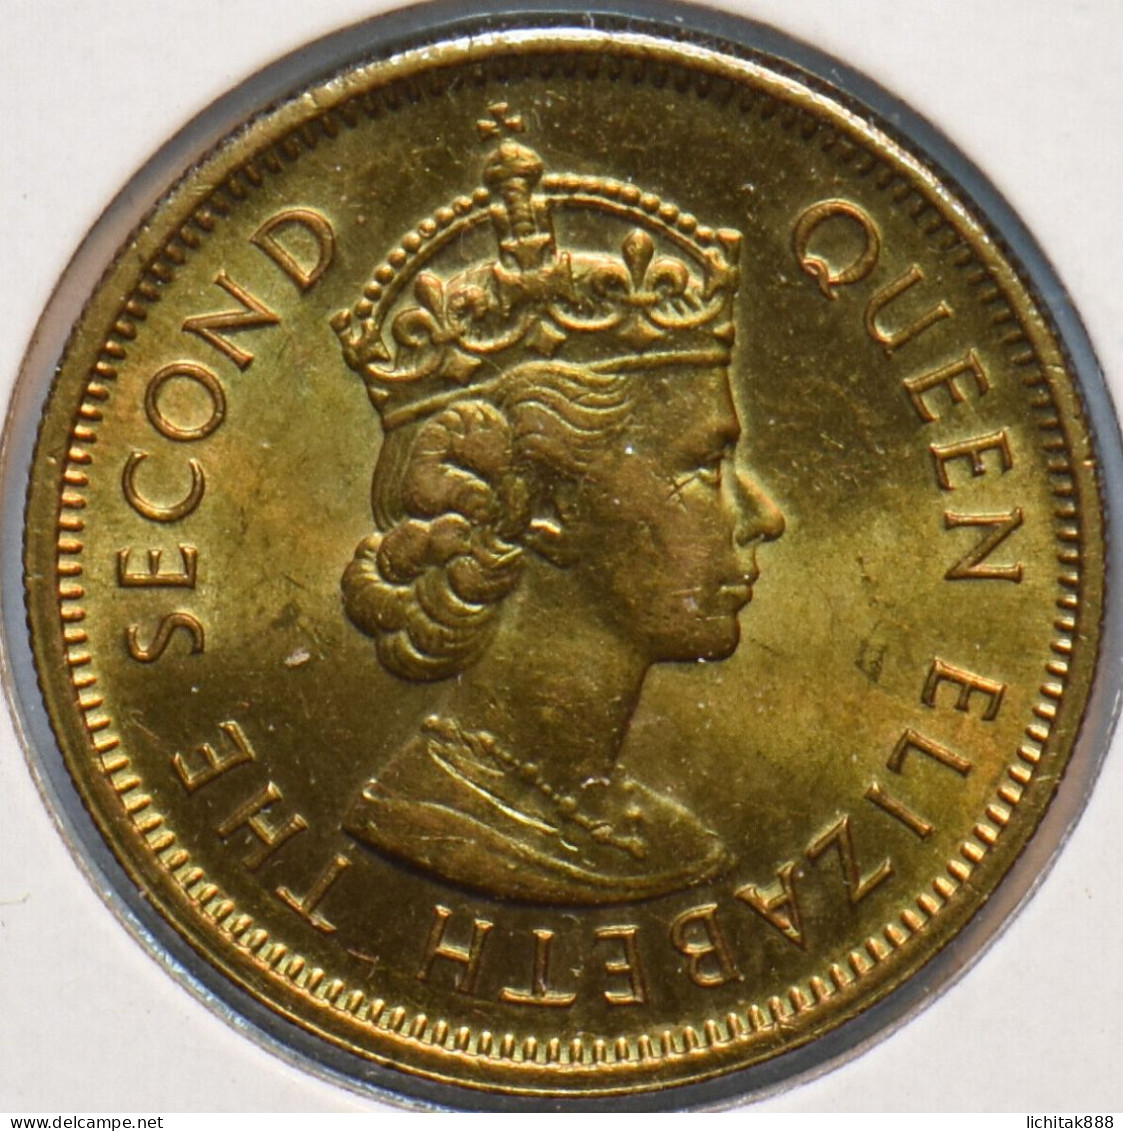 Hong Kong 1978 QEII Ten Cents / 10 Cents $0.1 Coin UNC - Hong Kong